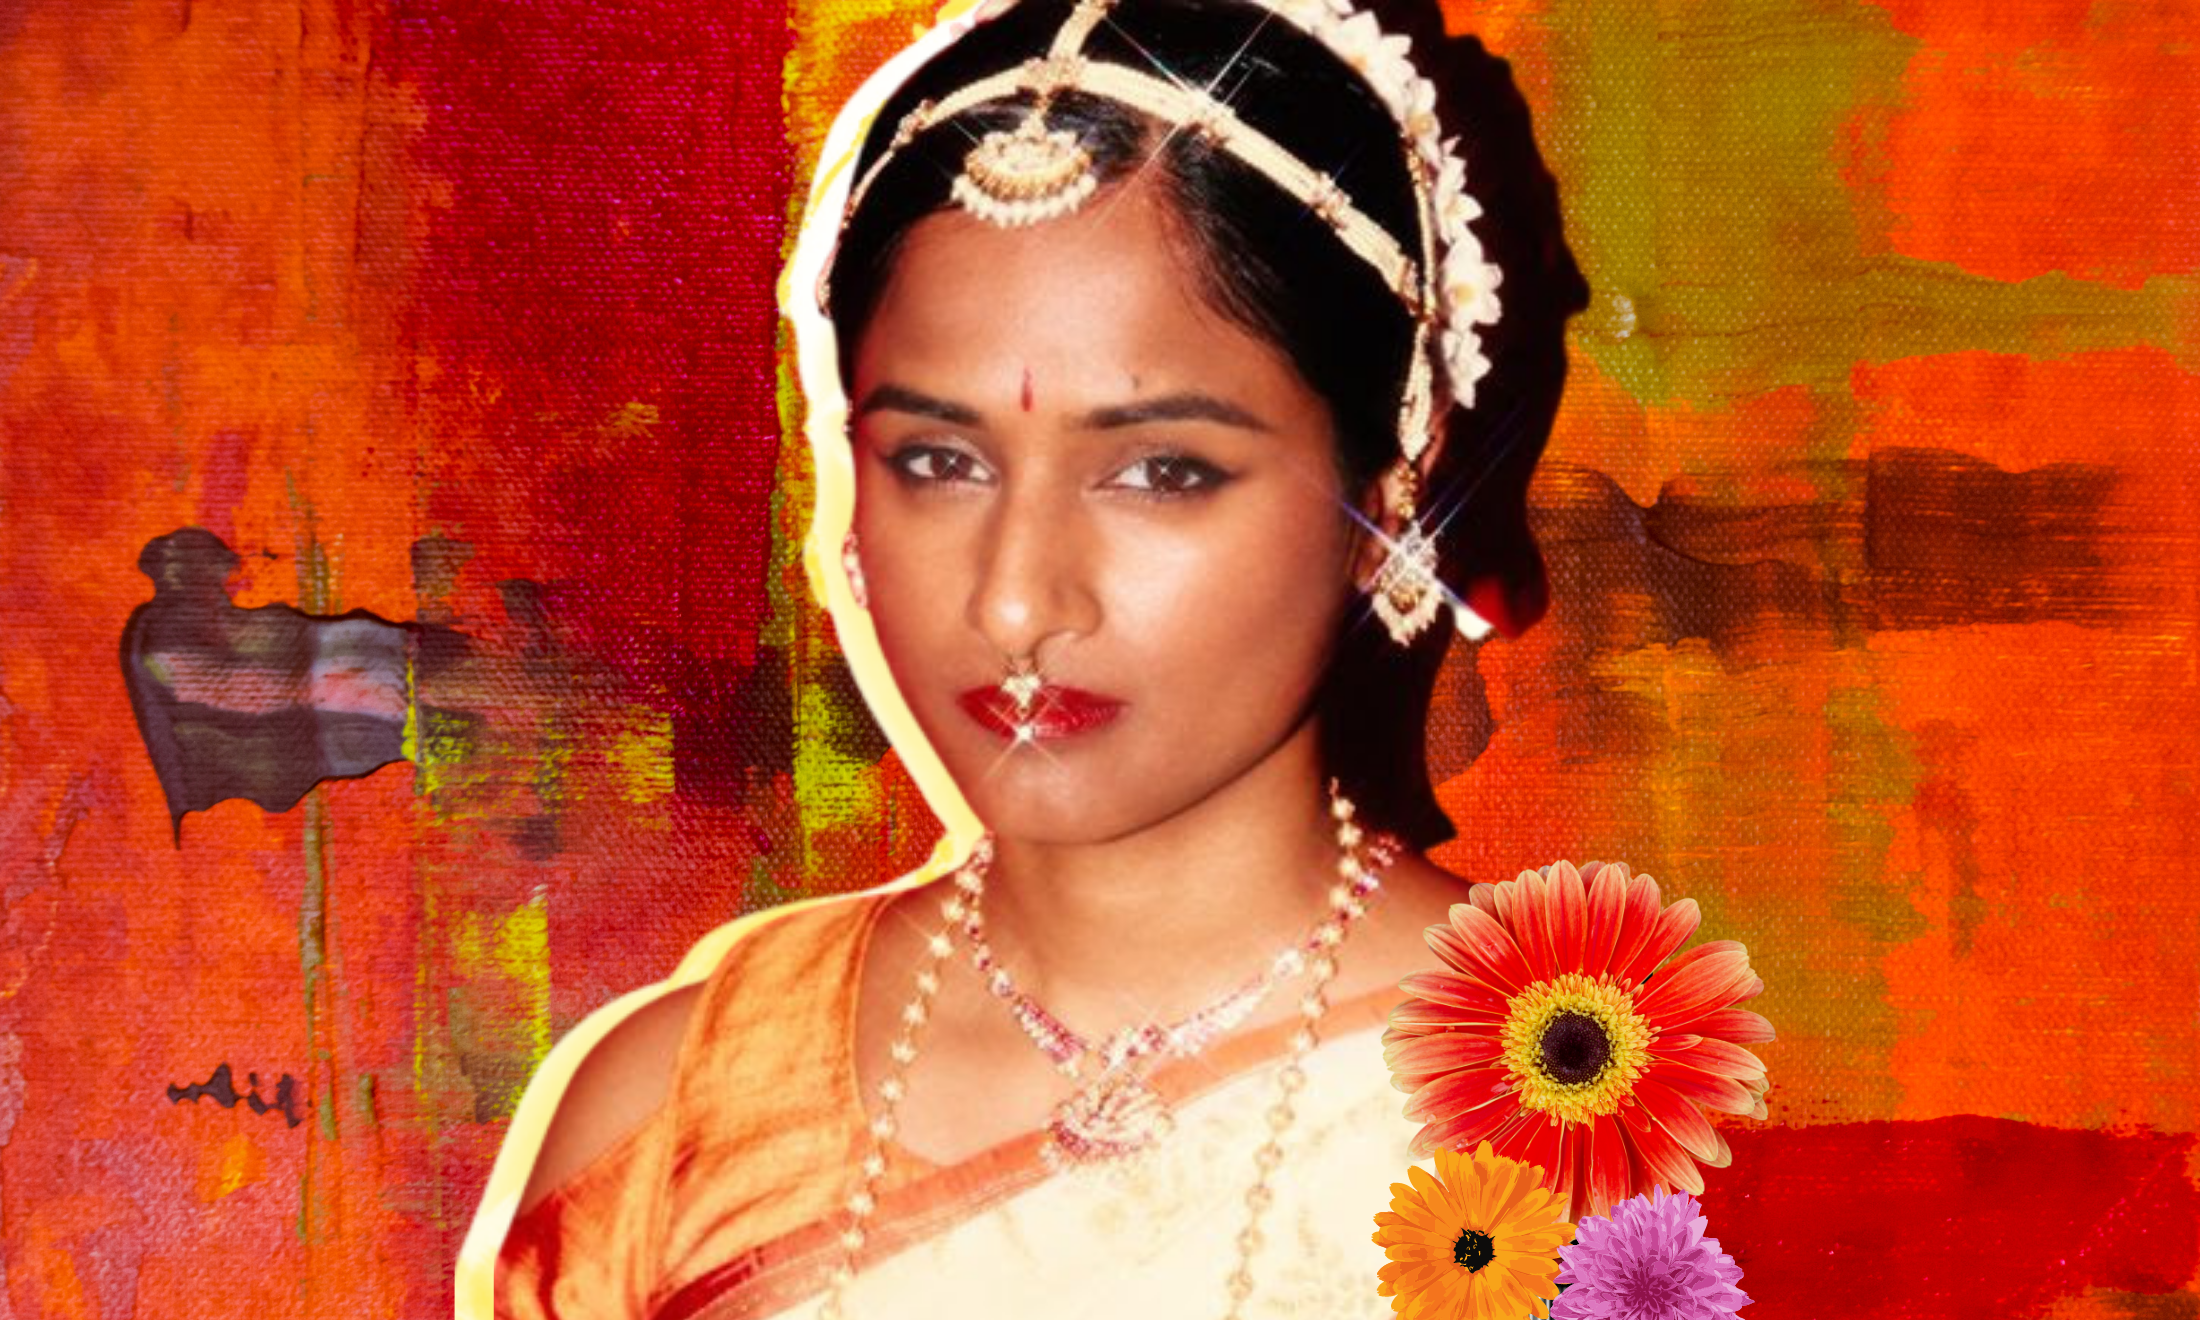 Five on it: Priya Ragu is bringing Tamil culture to Western pop